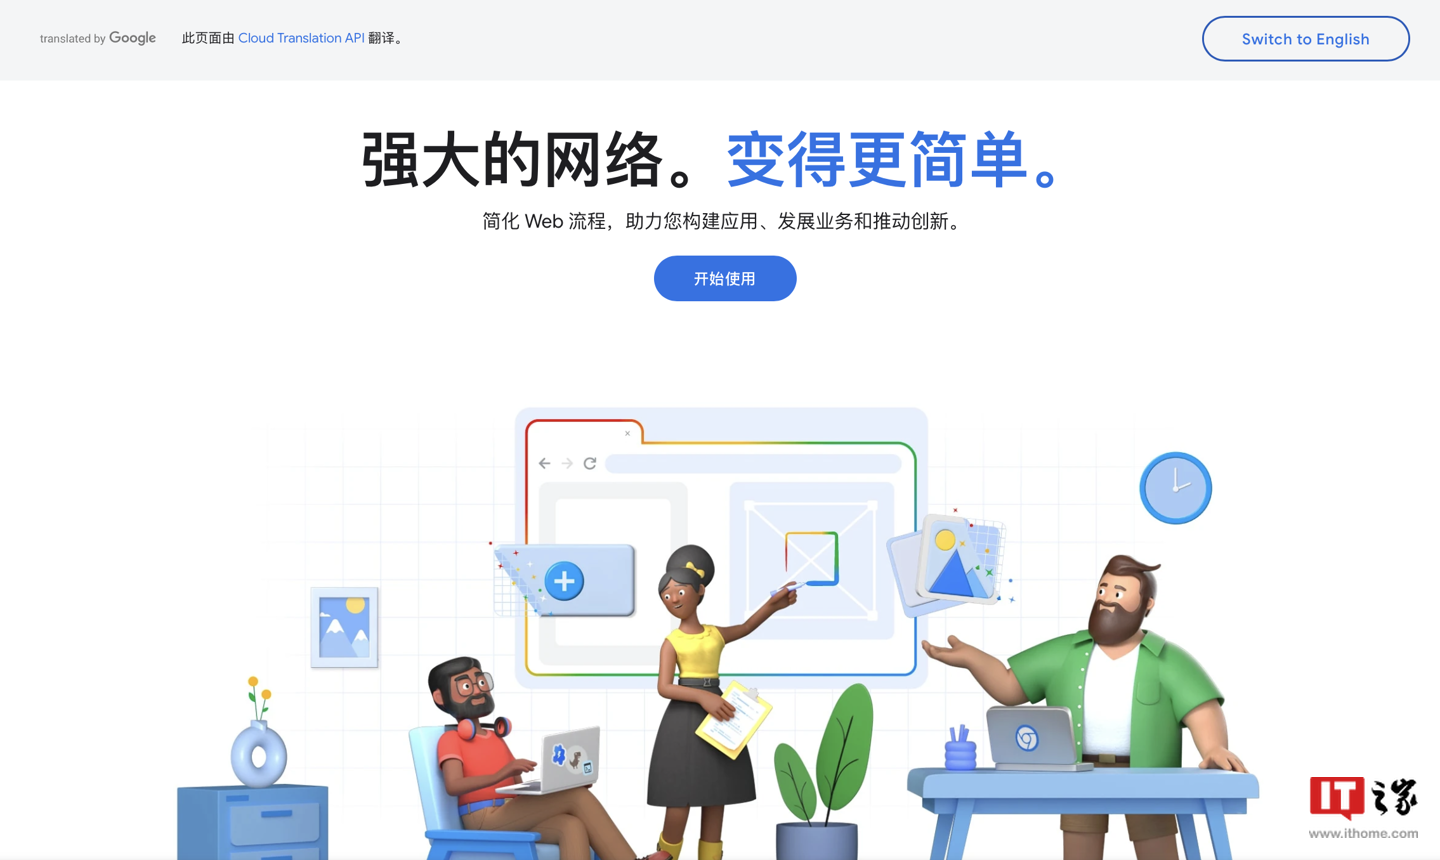 提供镜像内容，谷歌上线 Chrome for Developers 中国开发者 .cn 域名网站